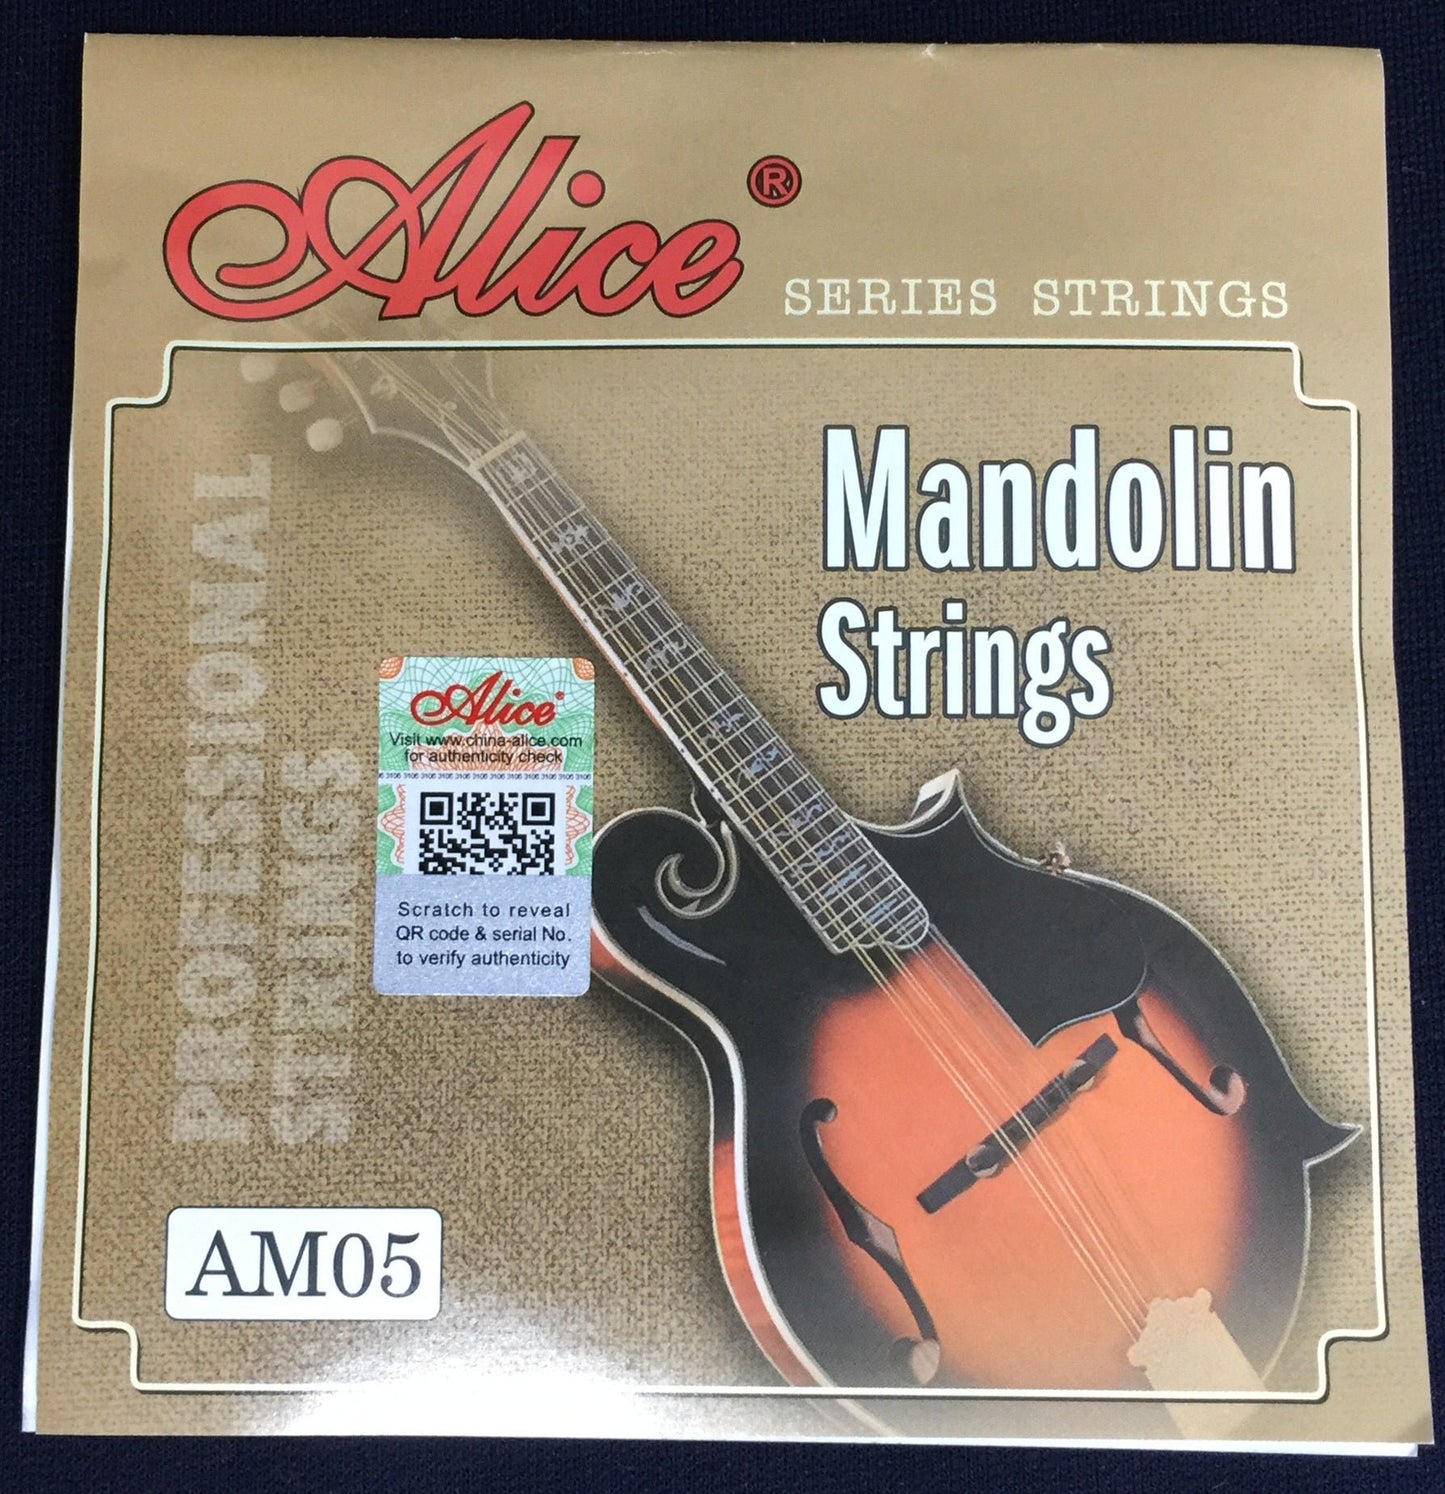 Alice AM05 Mandolin Strings - 8 String Set